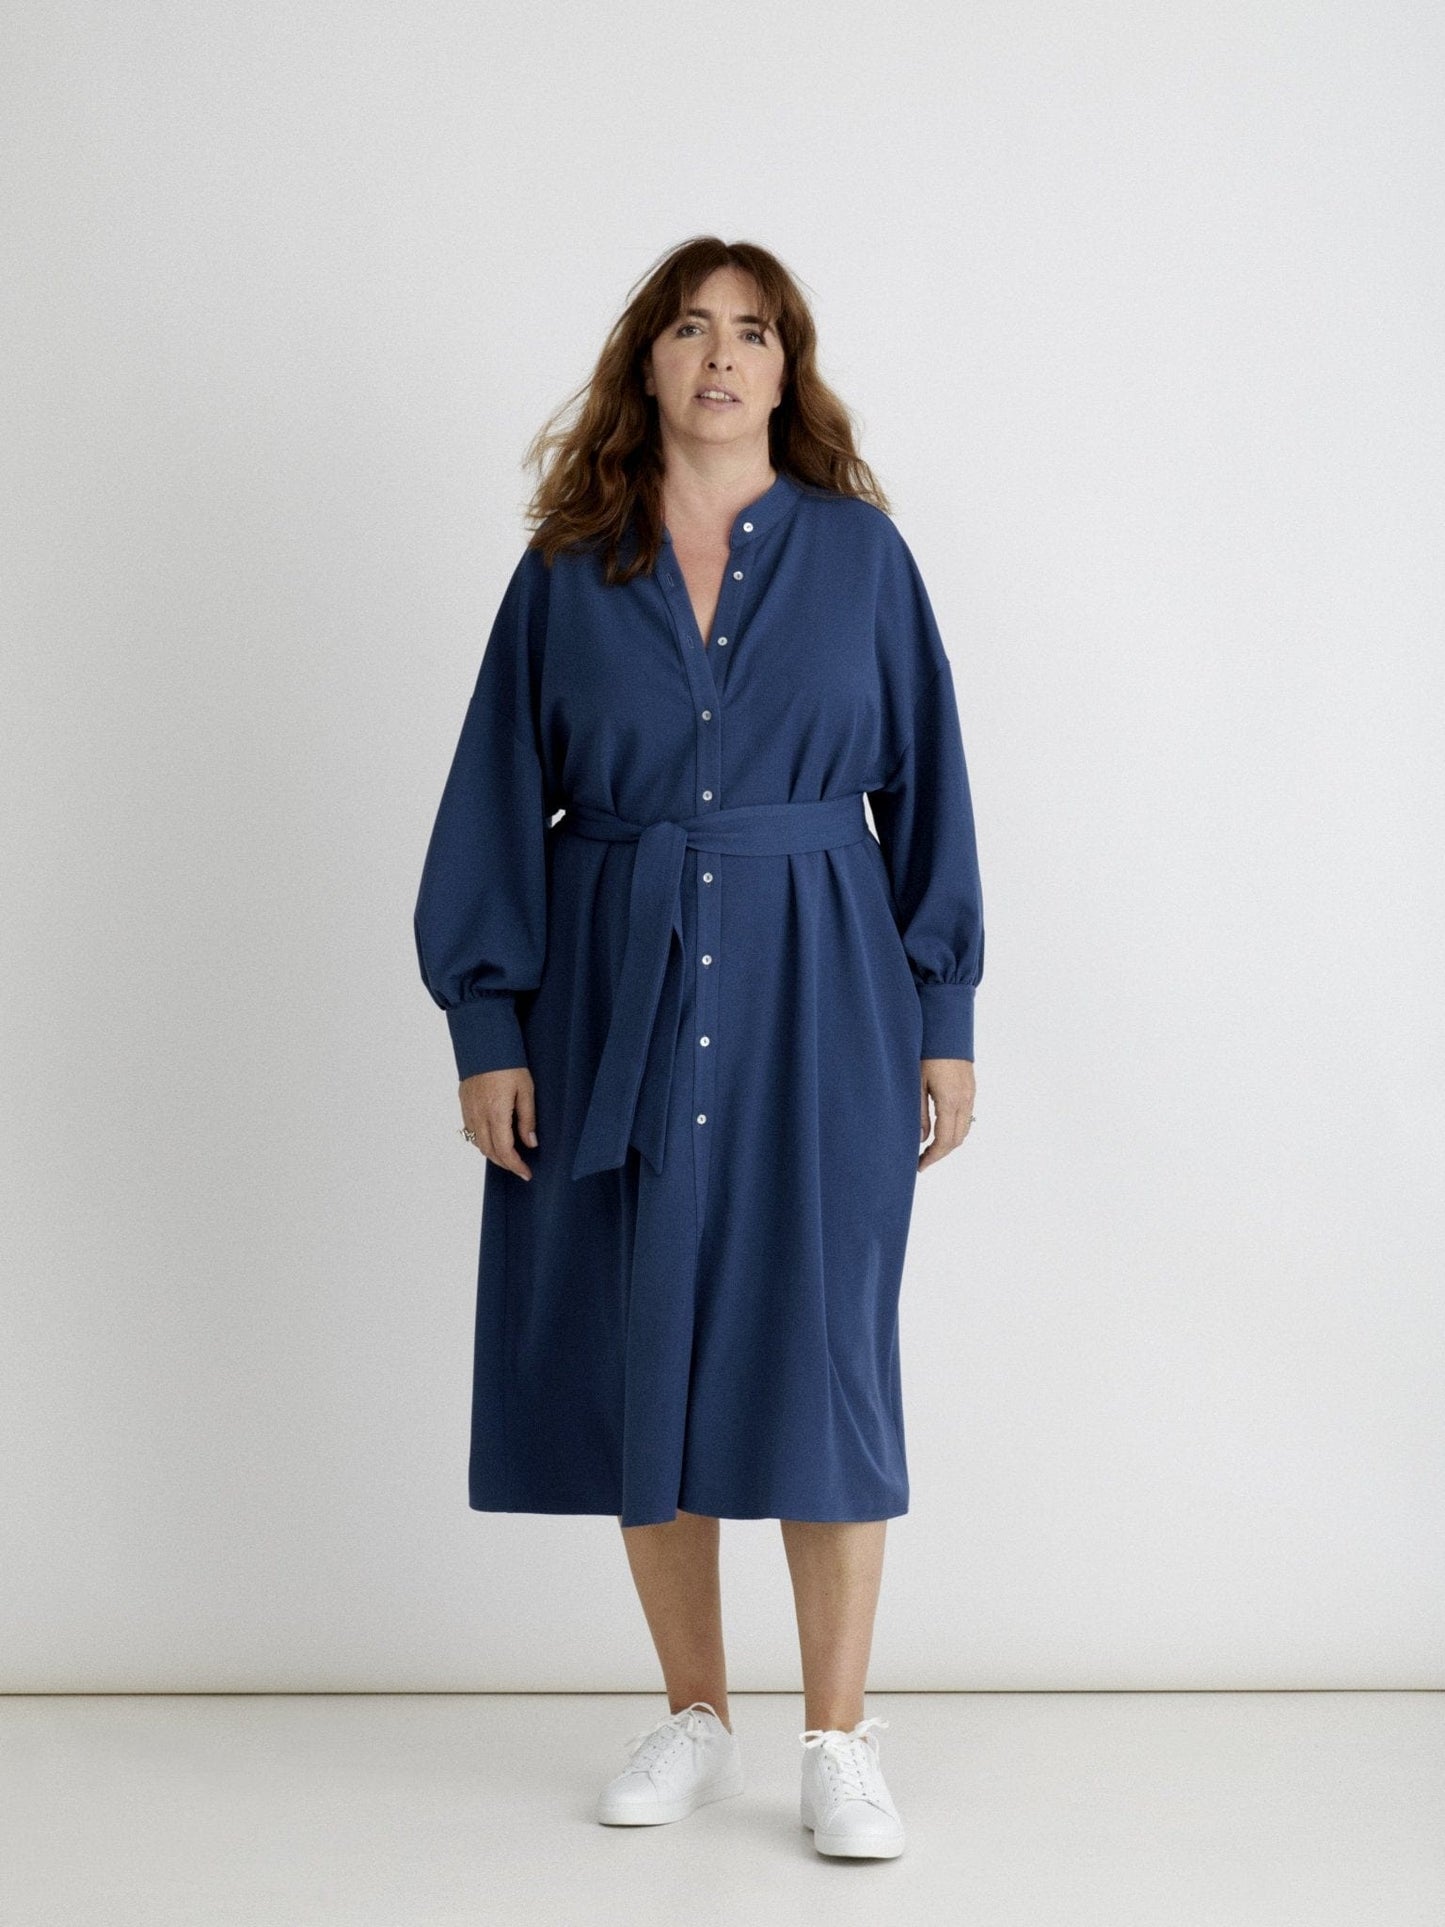 Les Militantes - robe bleu grande taille Méganne  chic, tendance et de qualité made in France